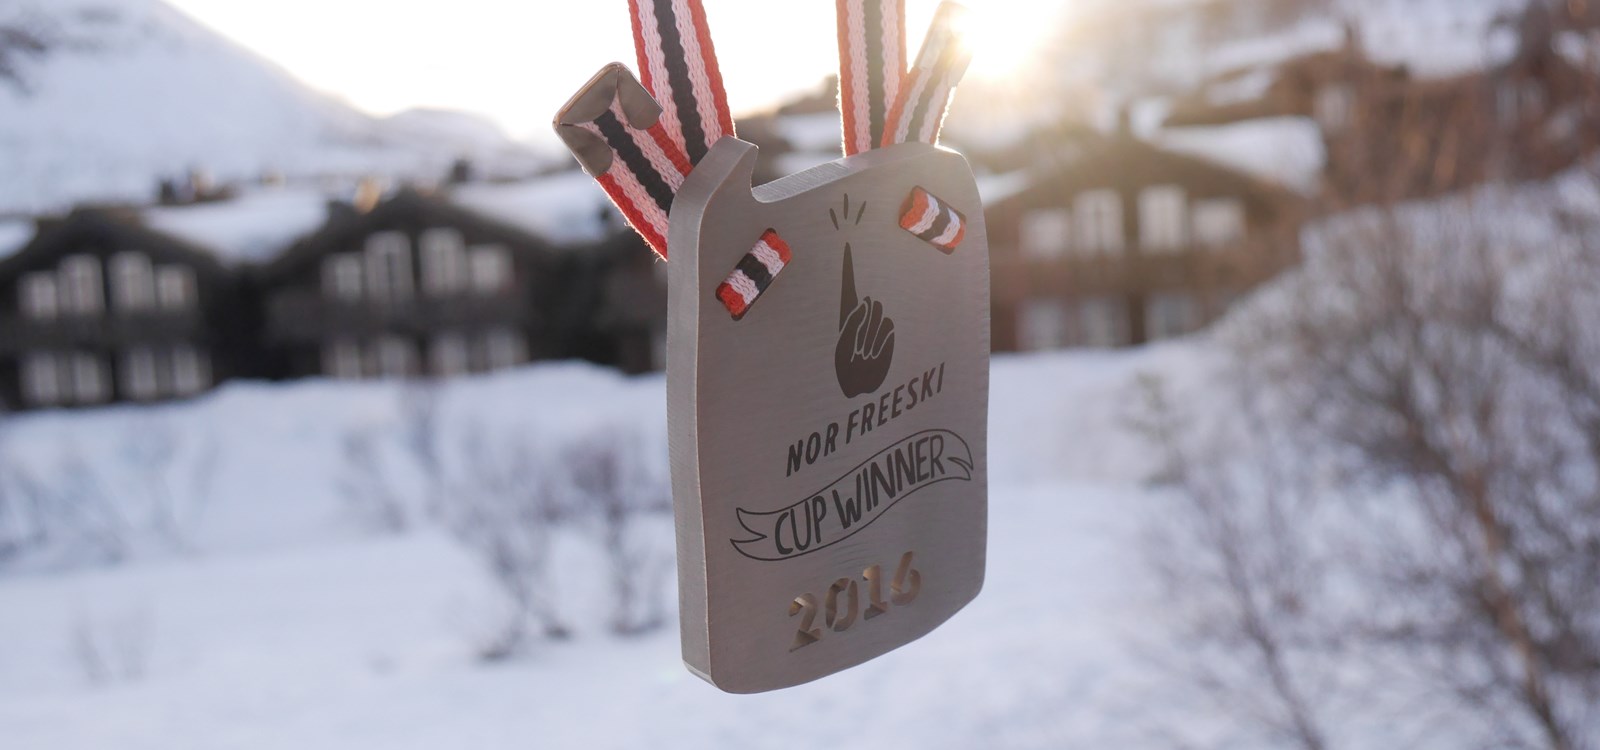 Medaljesett for NOR freeski, ei undergruppe i Norges Skiforbund.